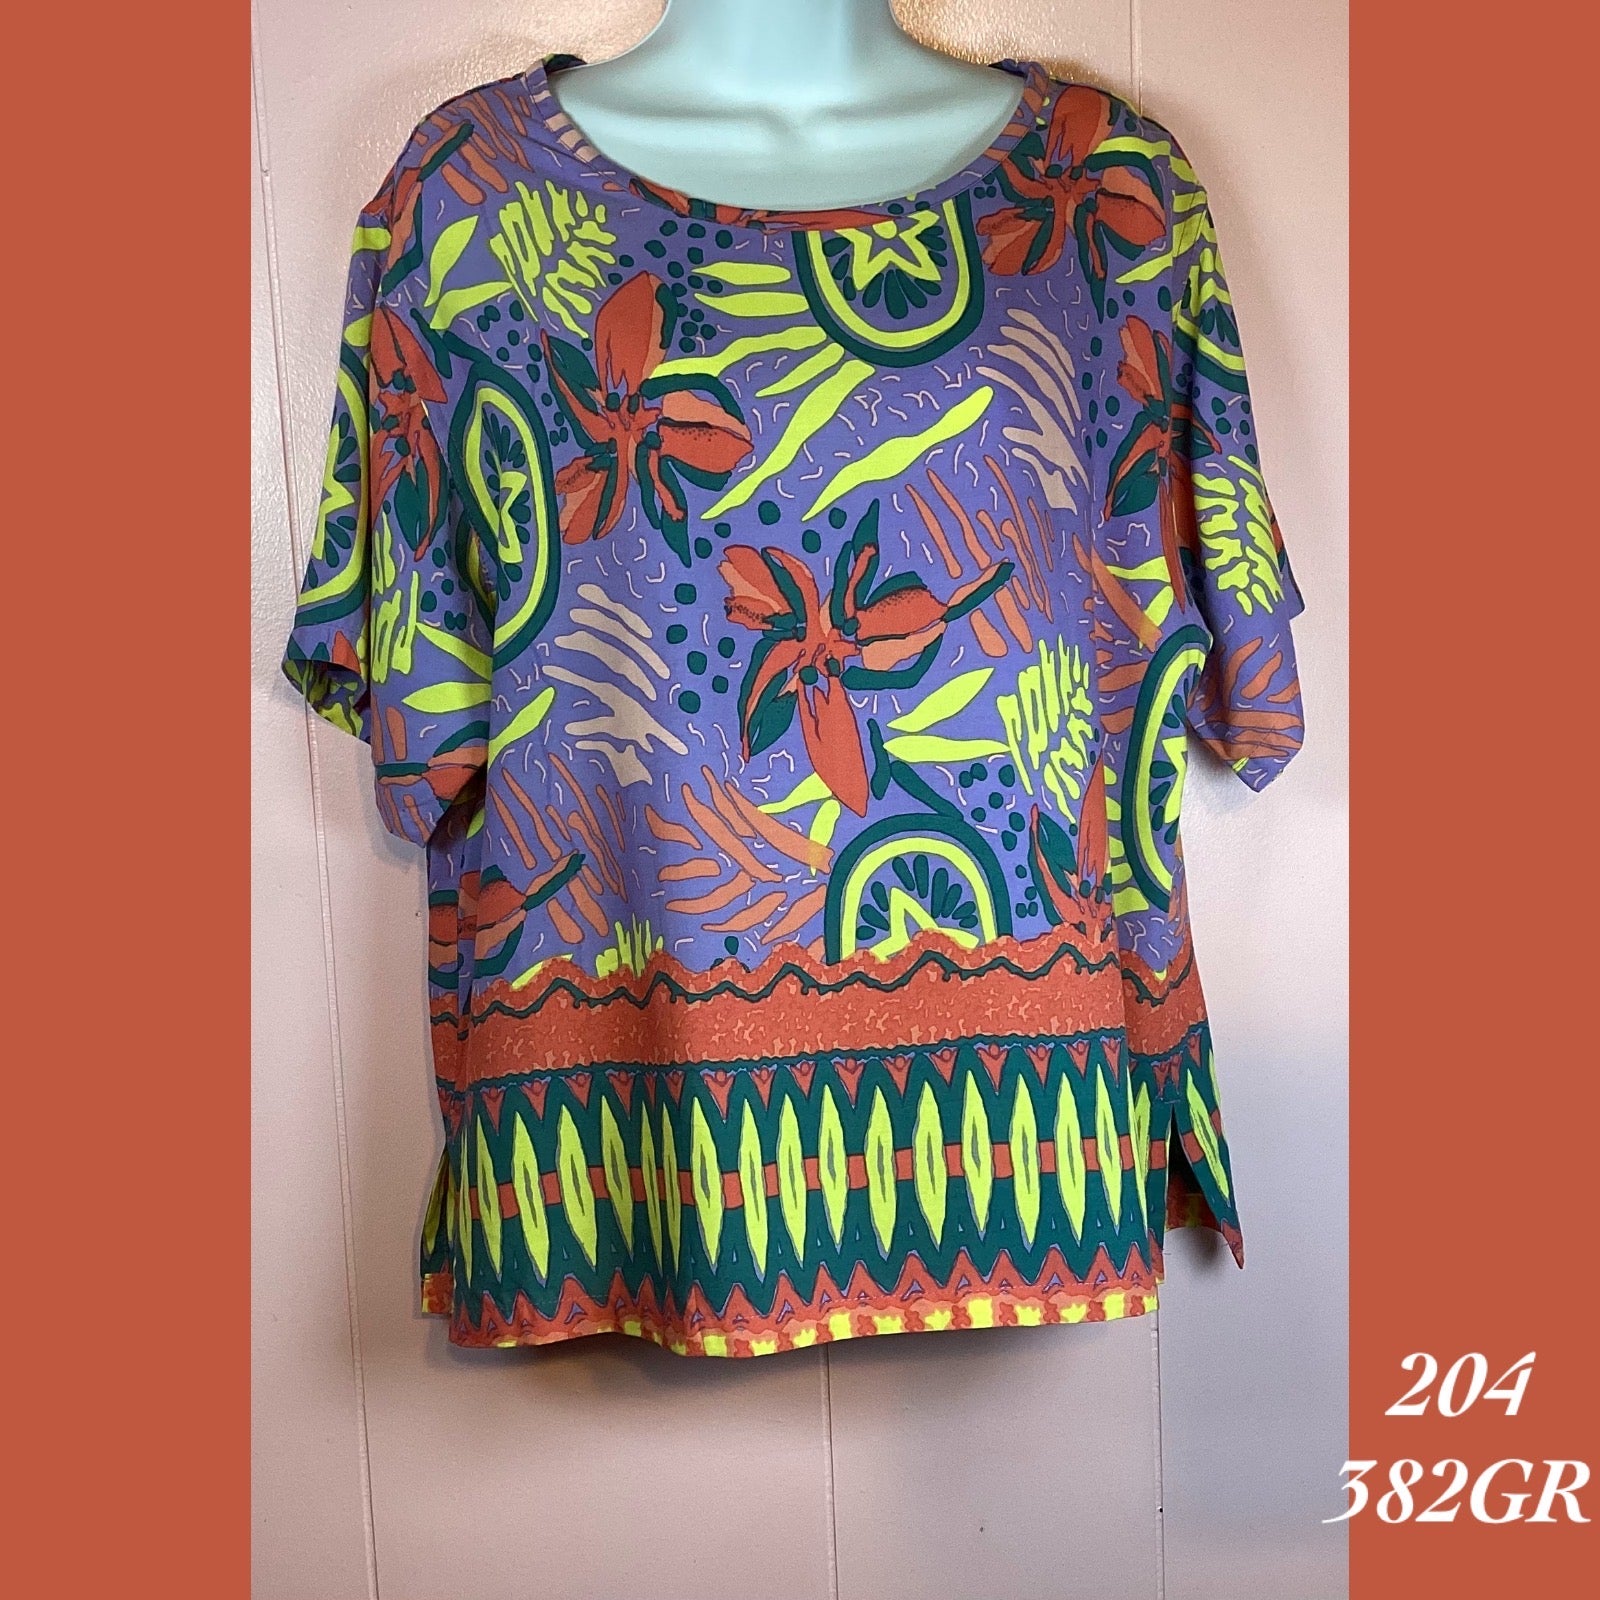 204 - 382GR , Sleeved blouse